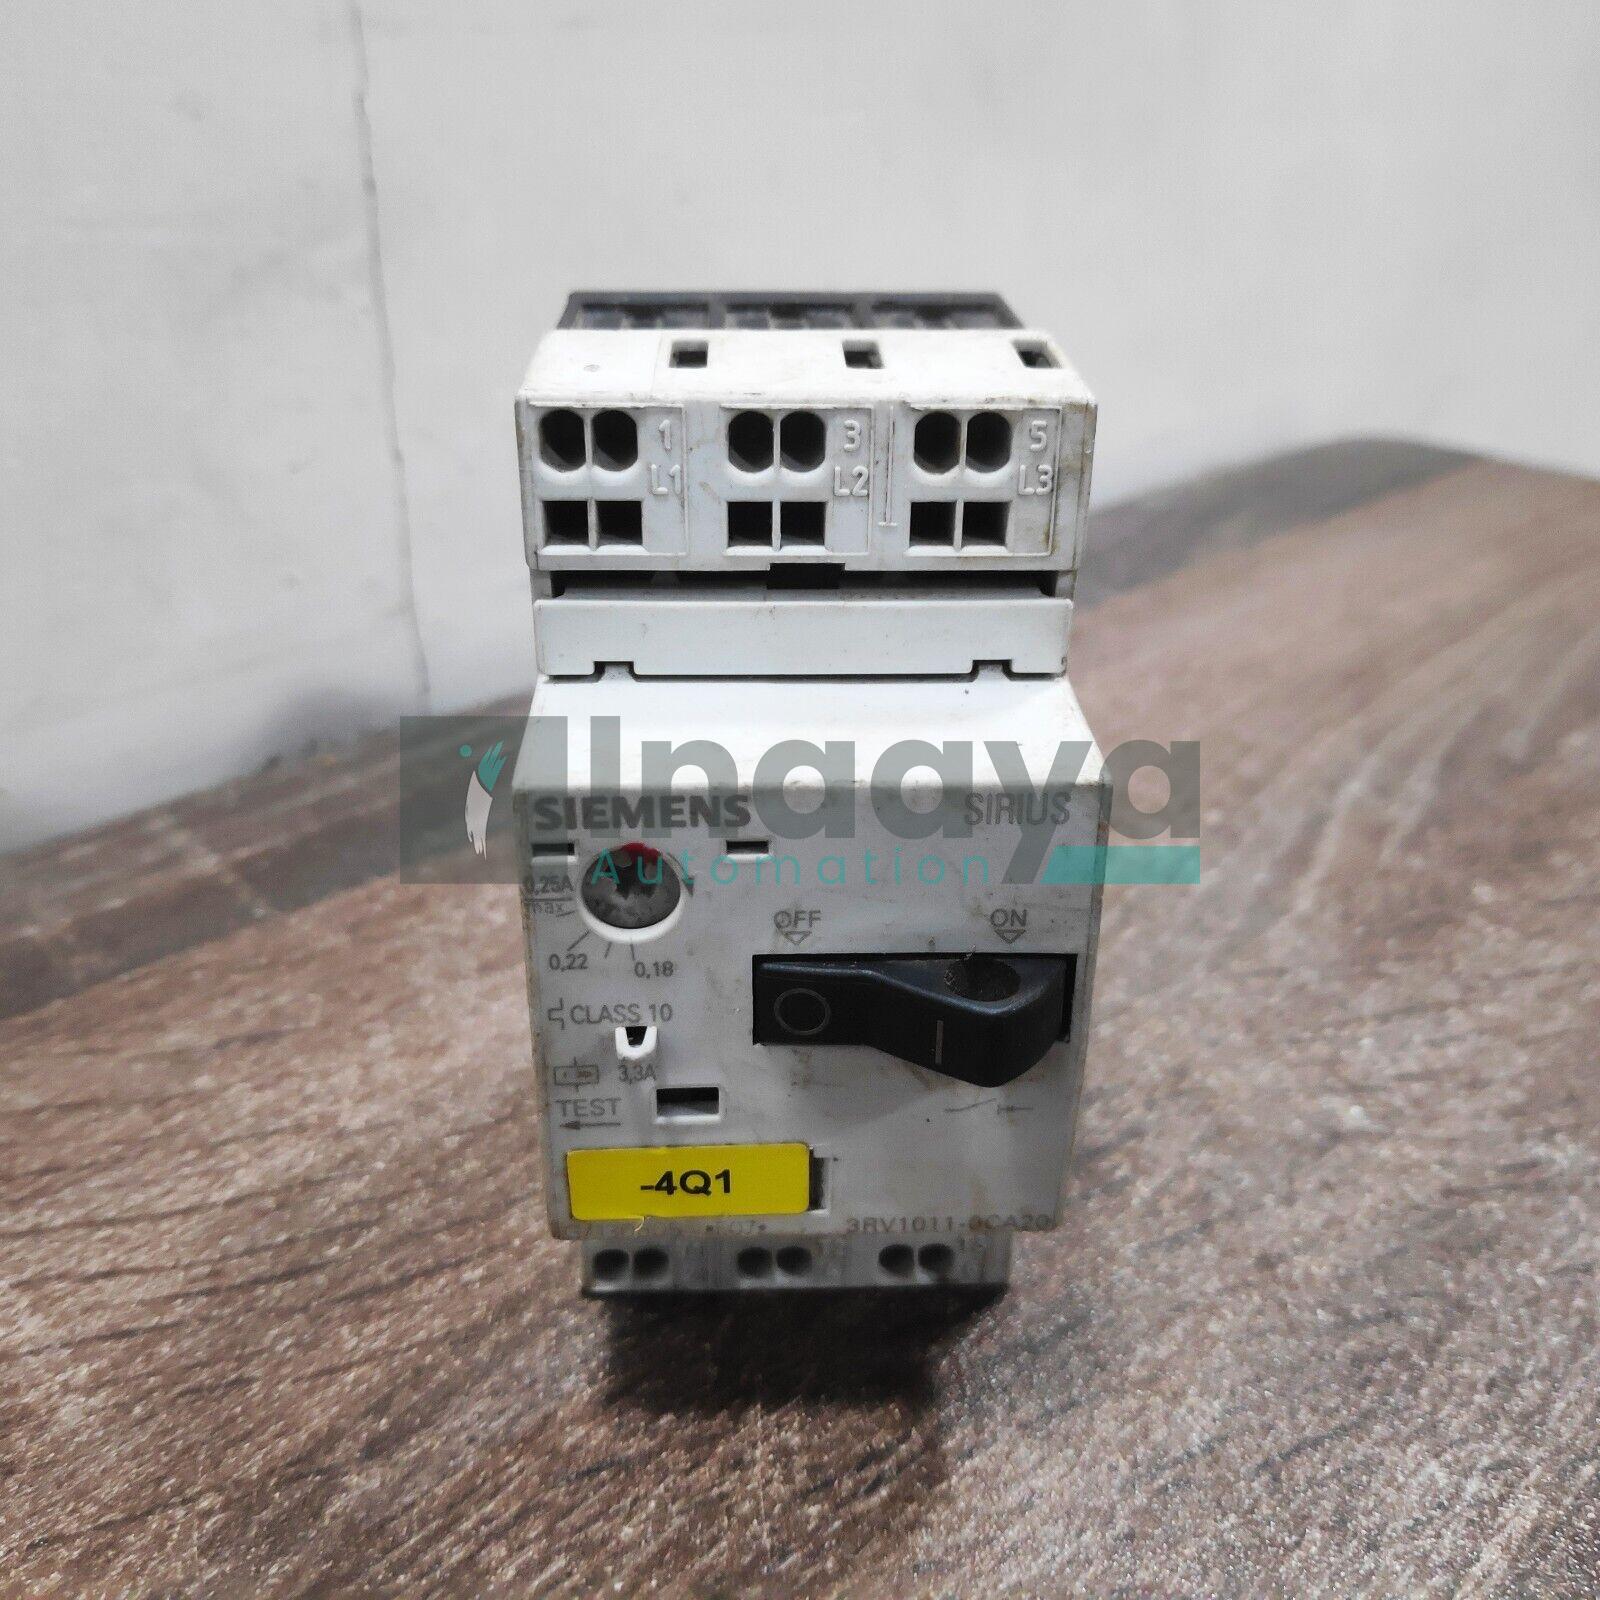 Siemens 3RV1011-0CA20 - Circuit Breaker